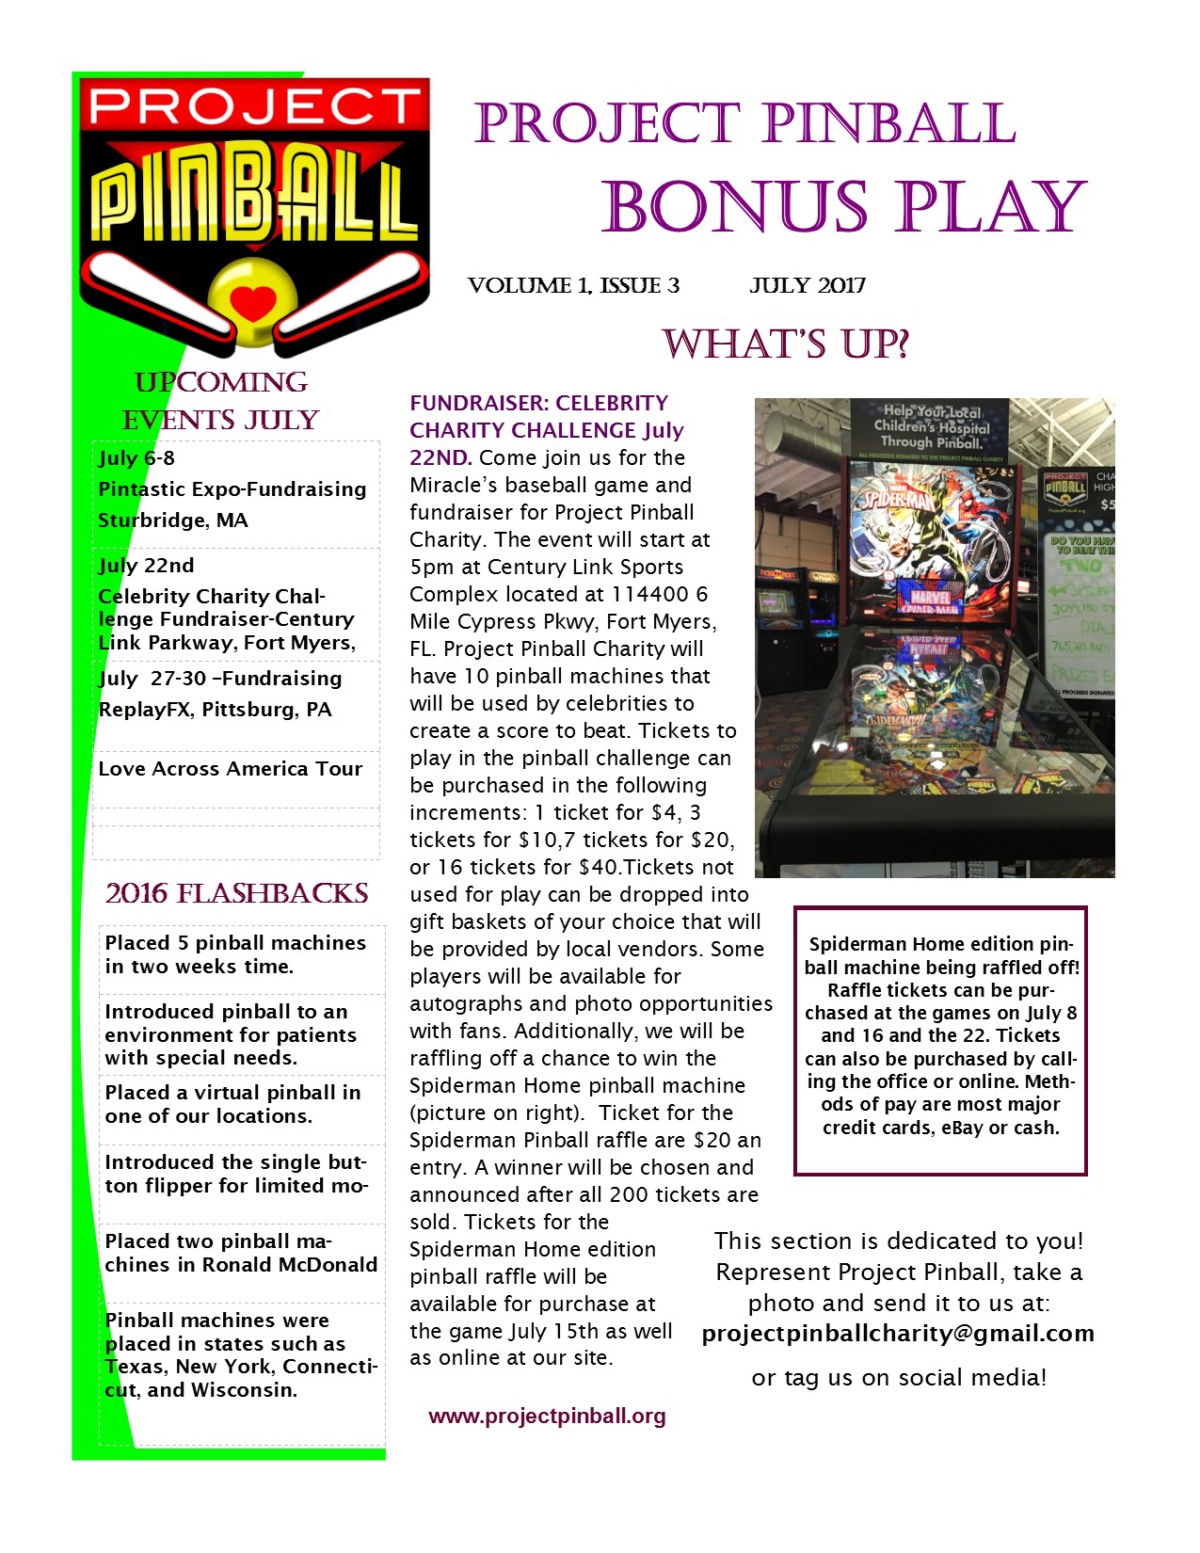 July 2017 Bonus Play Newsletter